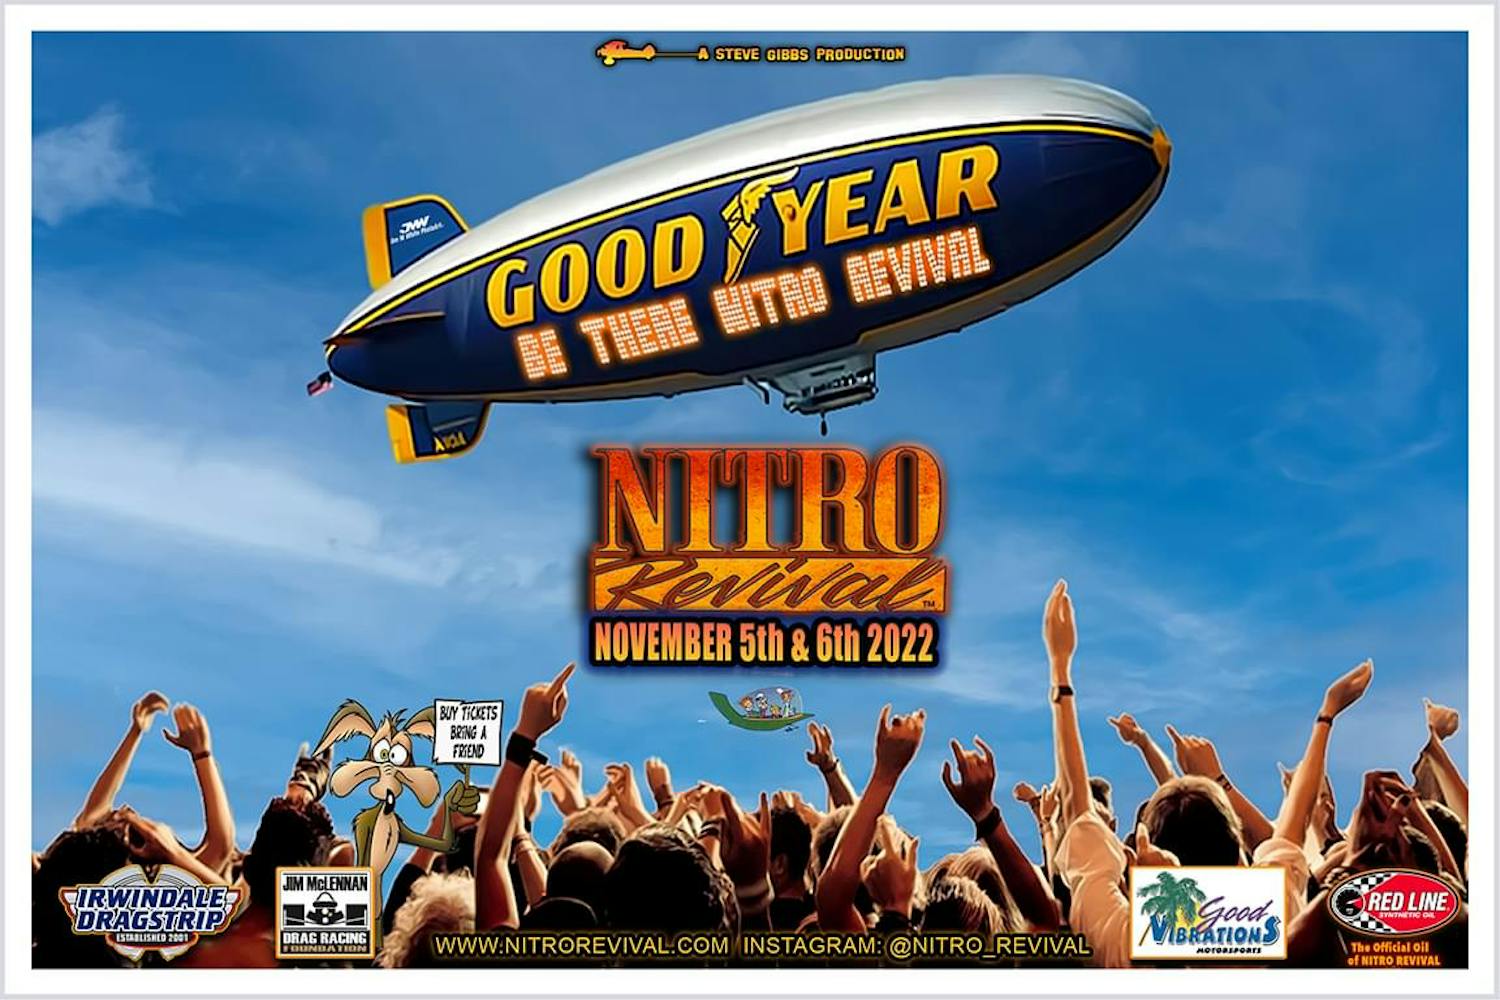 Nitro Revival poster